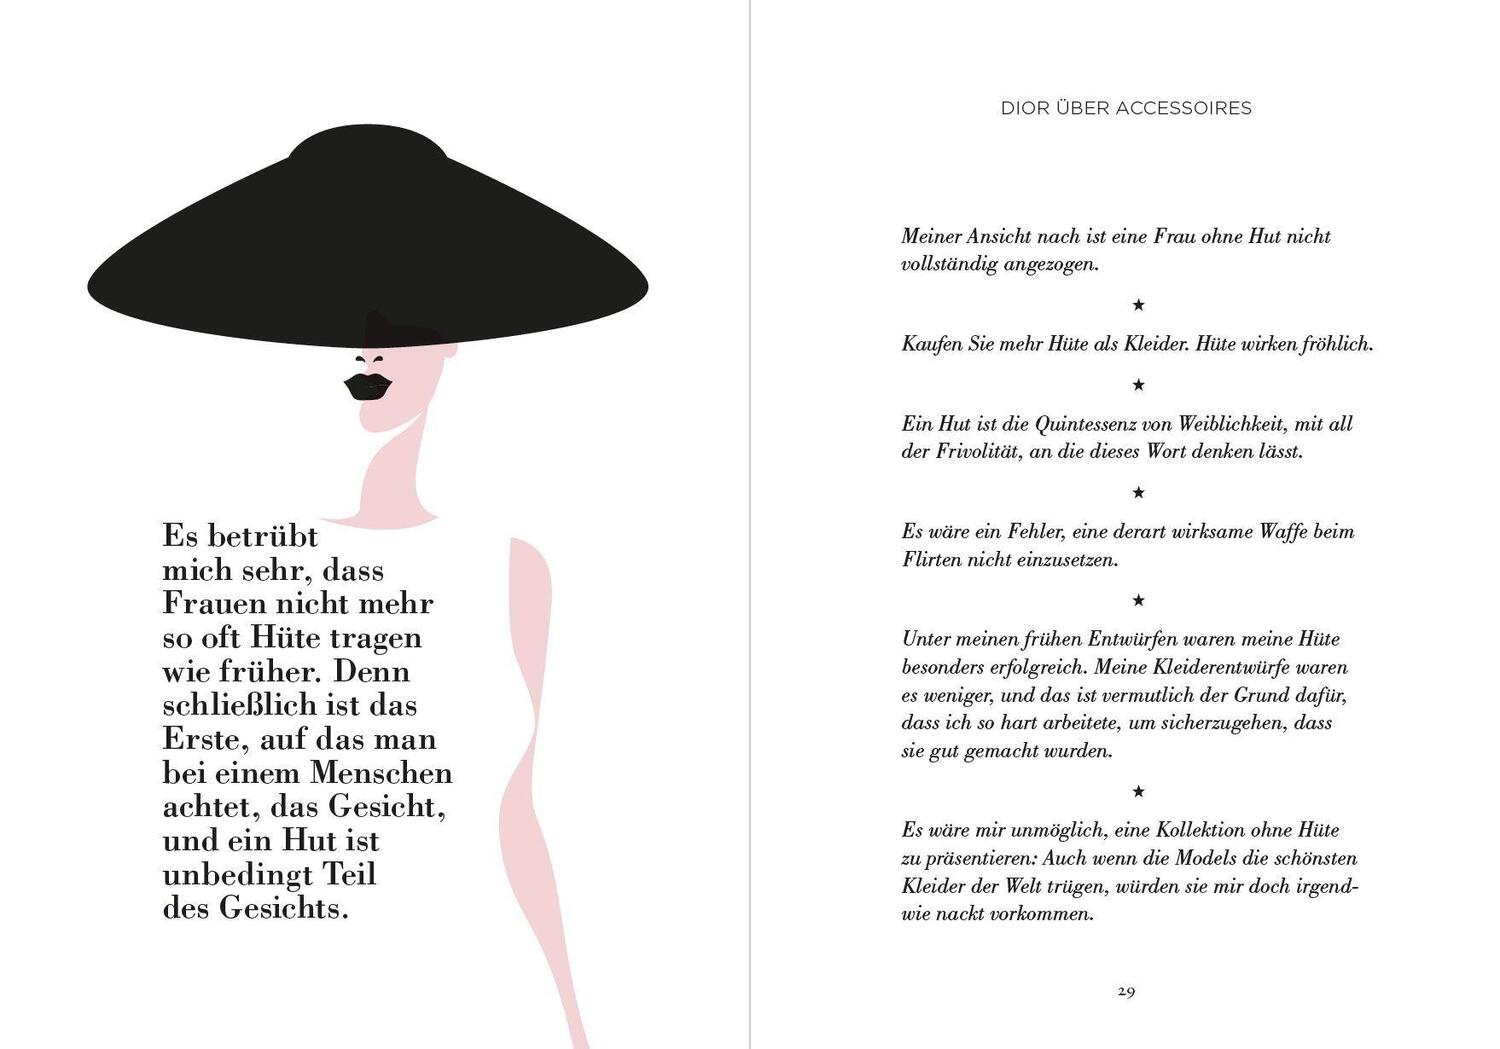 Bild: 9783791389356 | Christian Dior und wie er die Welt sah | Patrick Mauriès (u. a.)